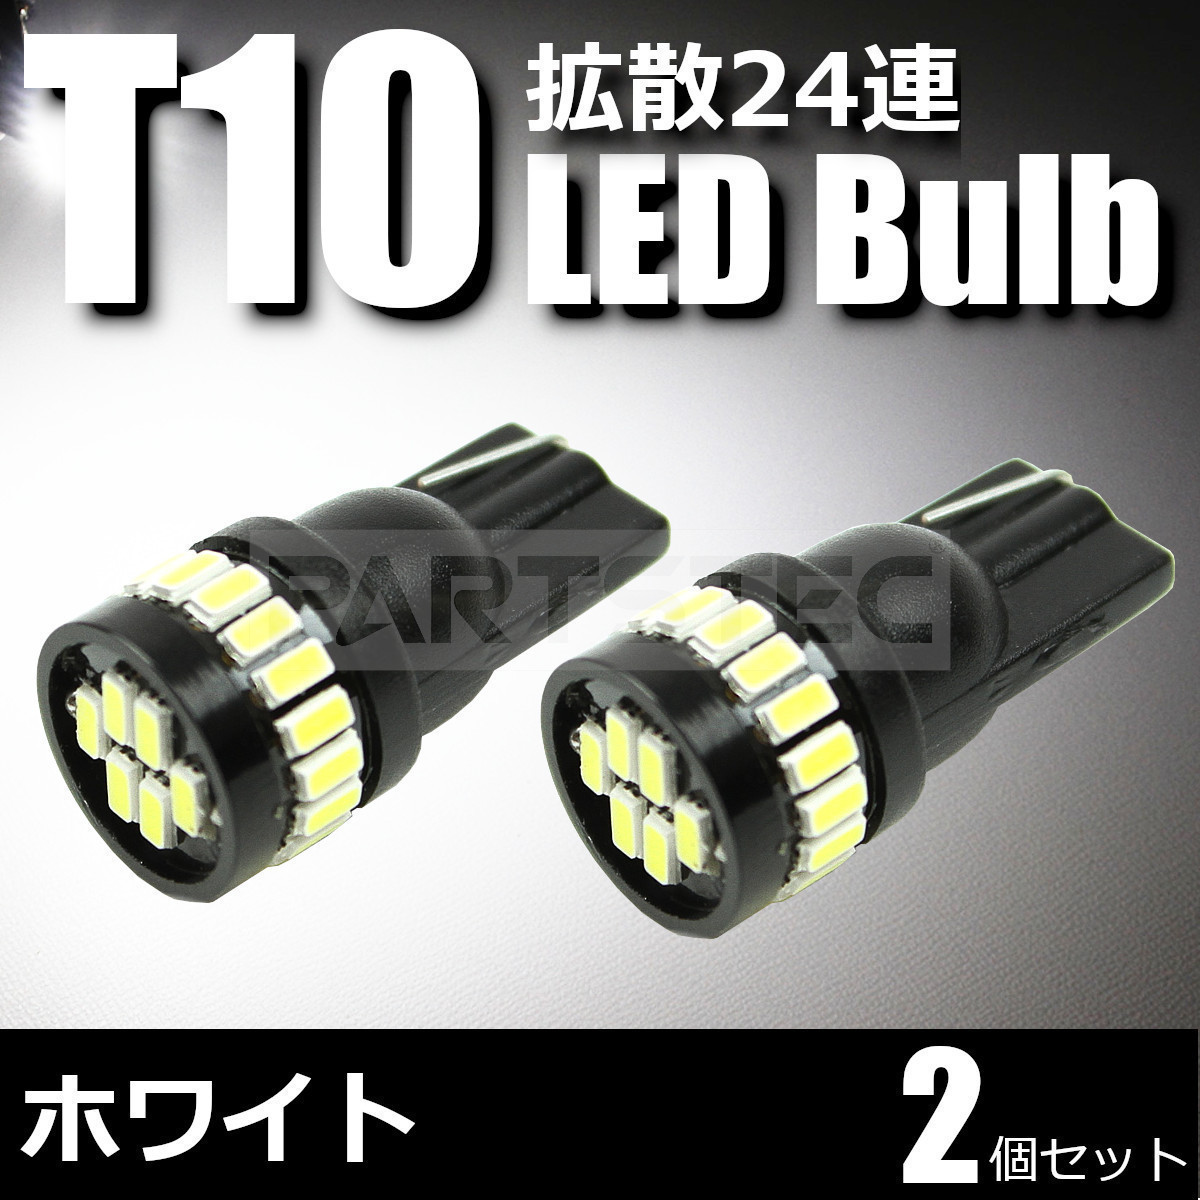 トヨタ ハイエース 200系 T10 LED バルブ 24連 2個セット 白 ホワイト ポジション ナンバー灯 ライセンスランプ /134-87×2 C-2_画像1